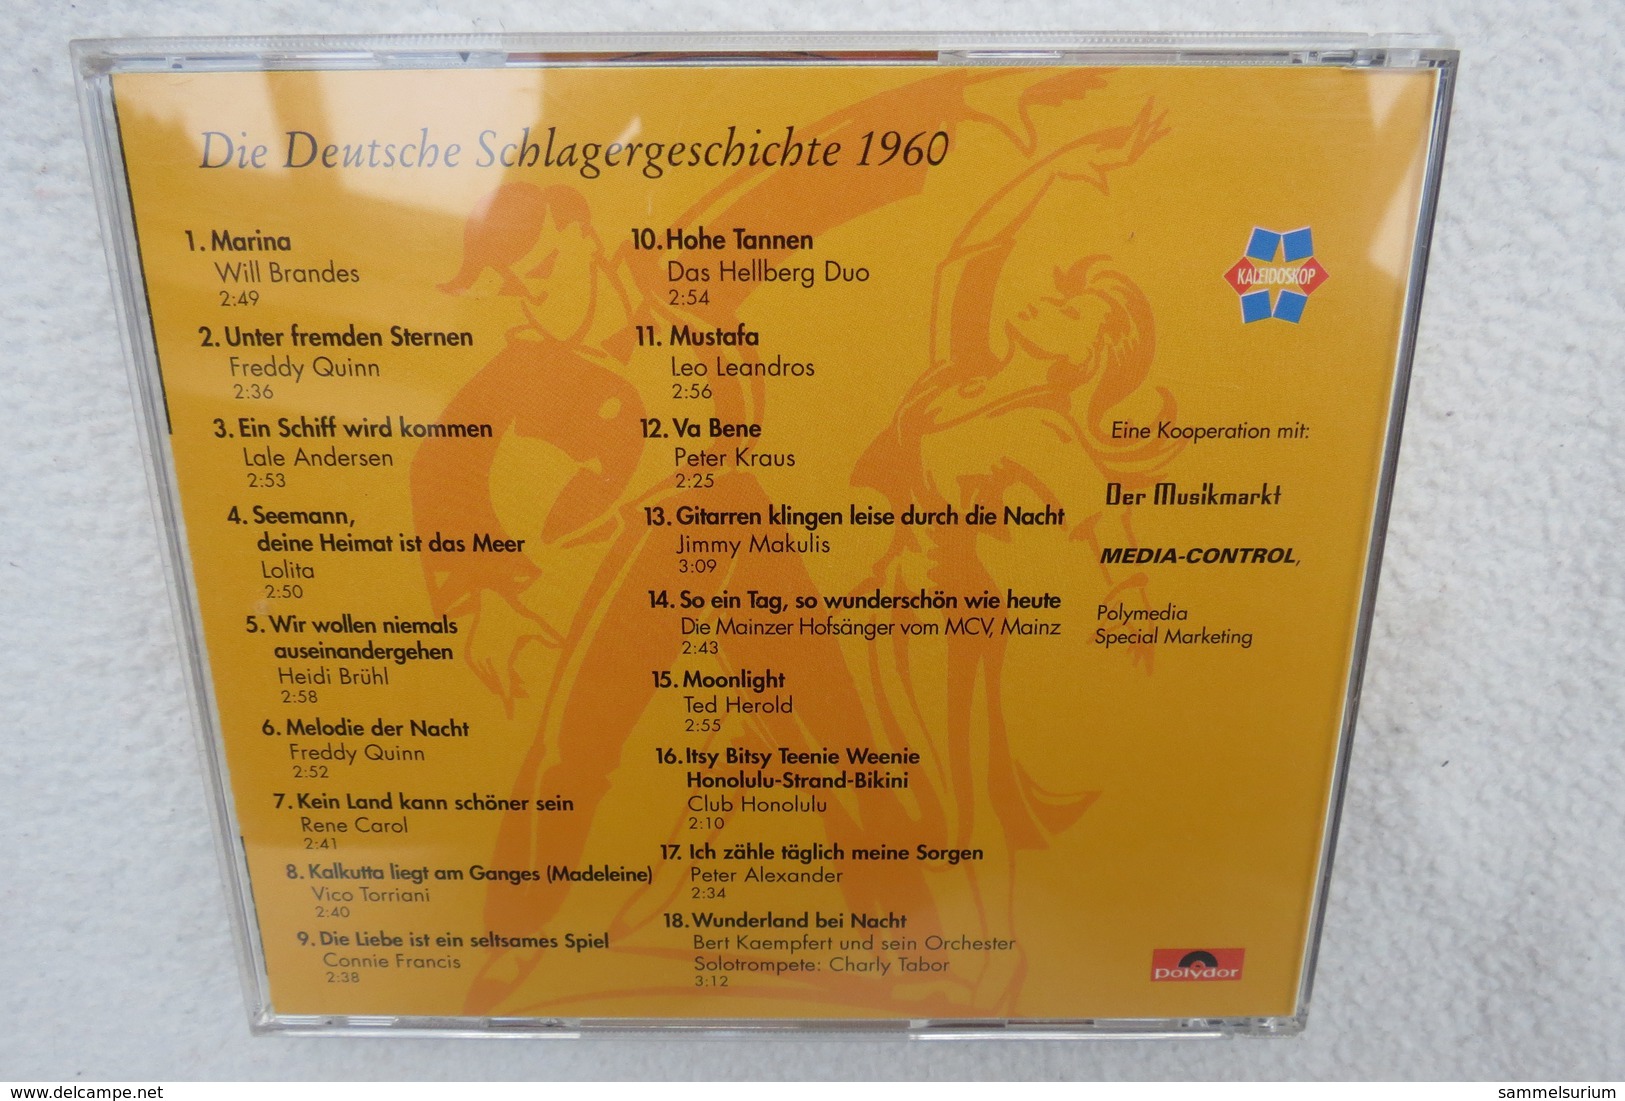 CD "Die Deutsche Schlagergeschichte 1960" Authentische Tondokumentation Erfolgreicher Dtsch. Titel Im Original 1959-1989 - Sonstige - Deutsche Musik